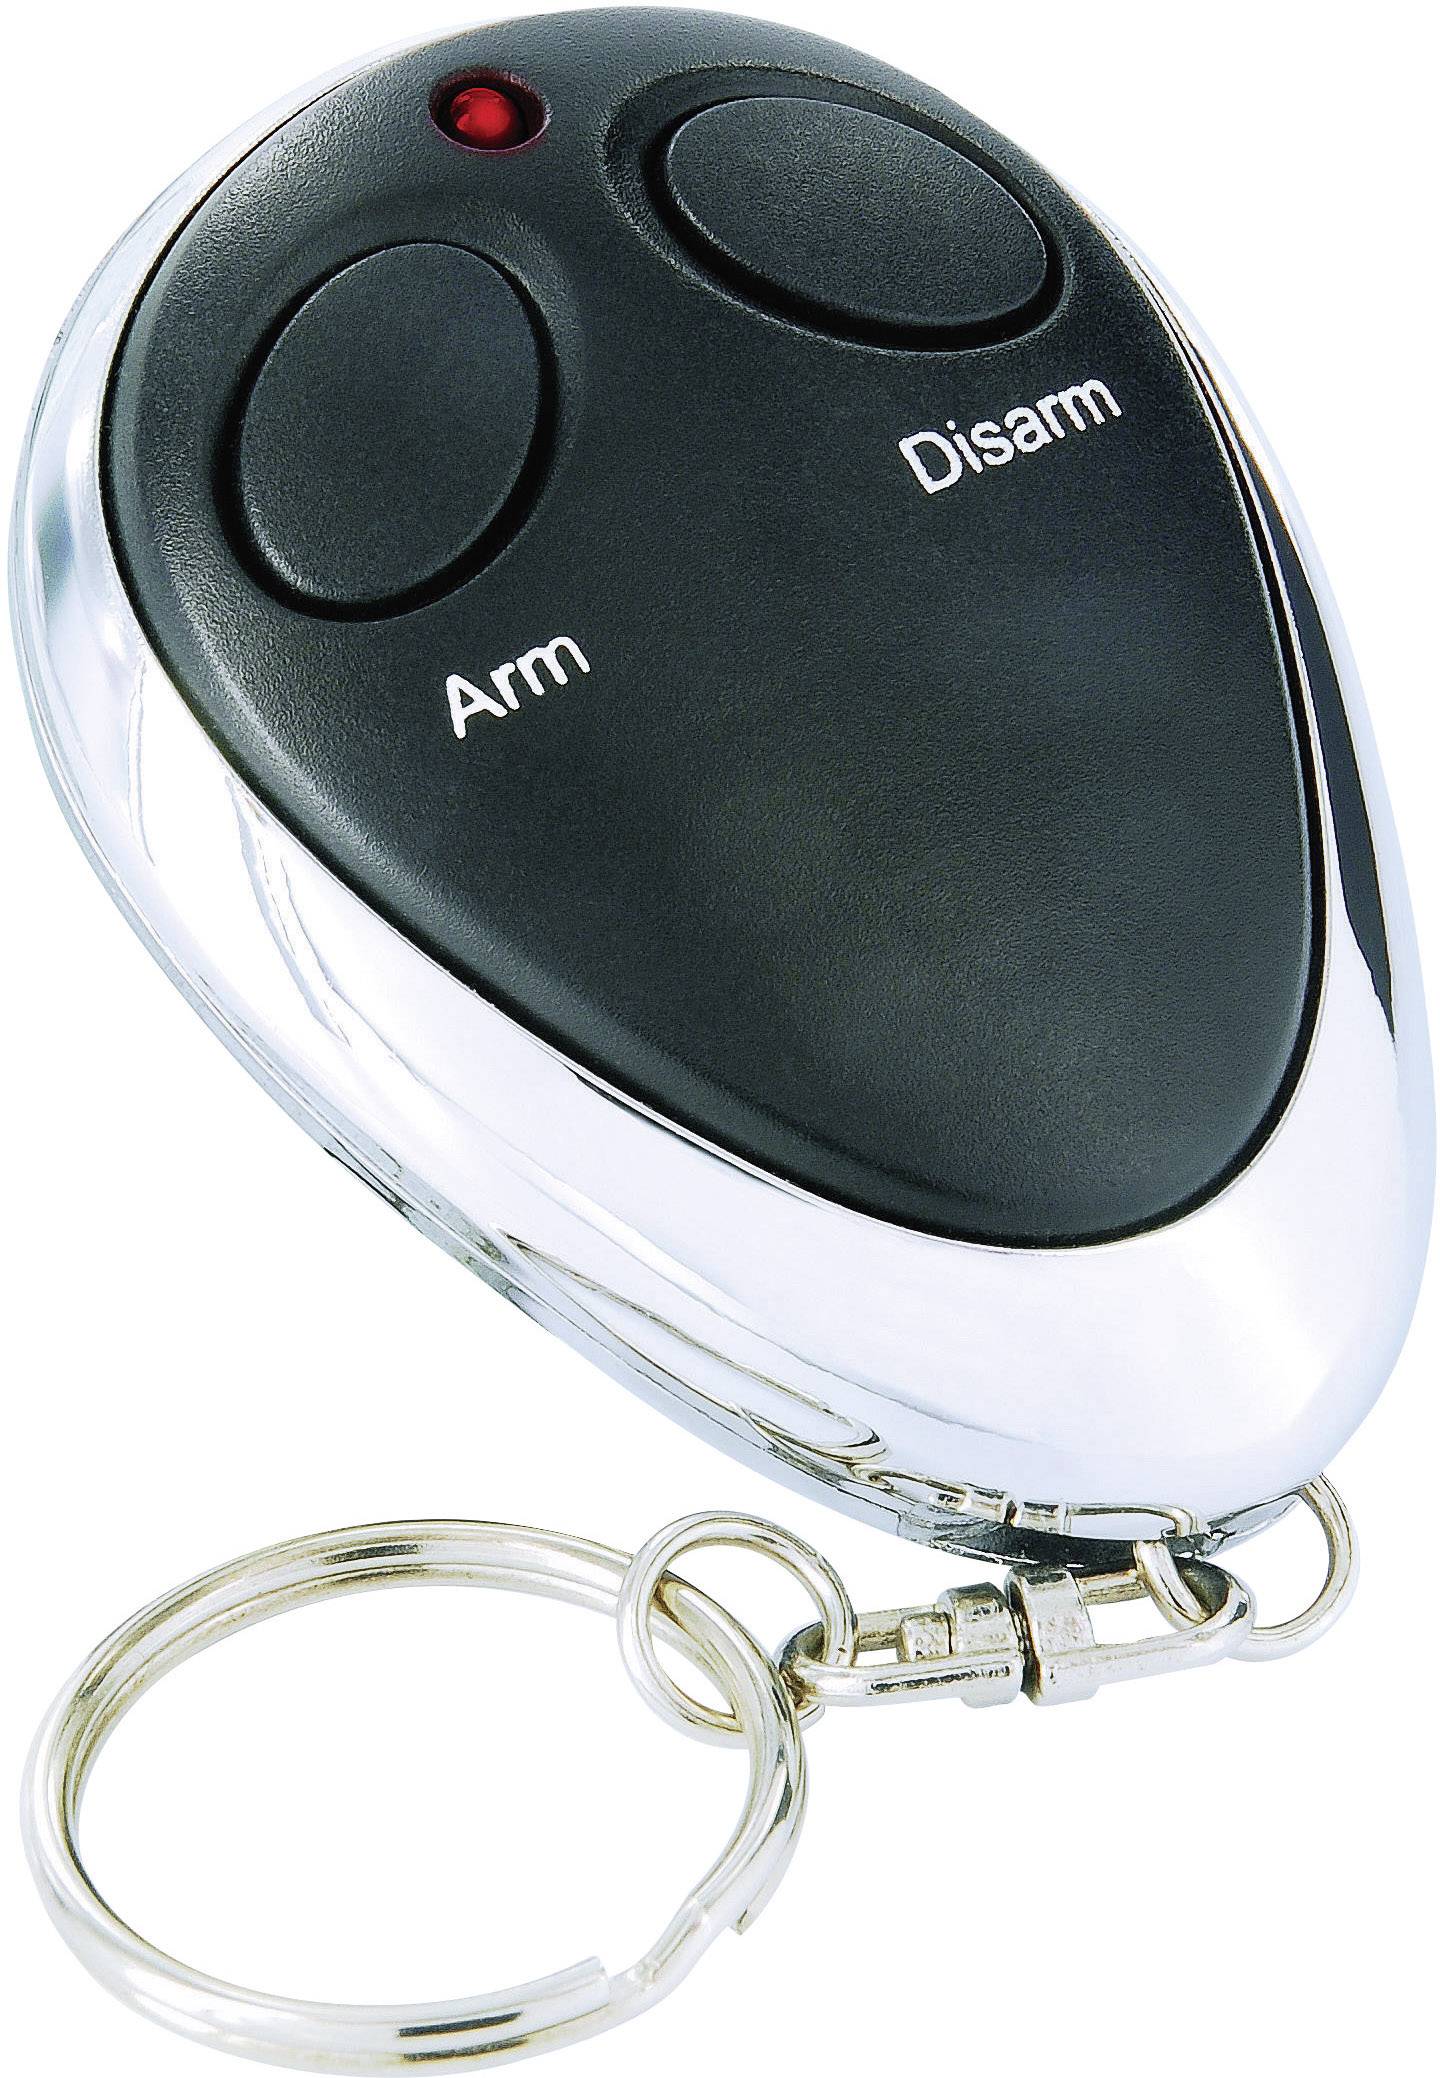 Smartwares Car Alarm Incl Remote Control In Car Surveillance